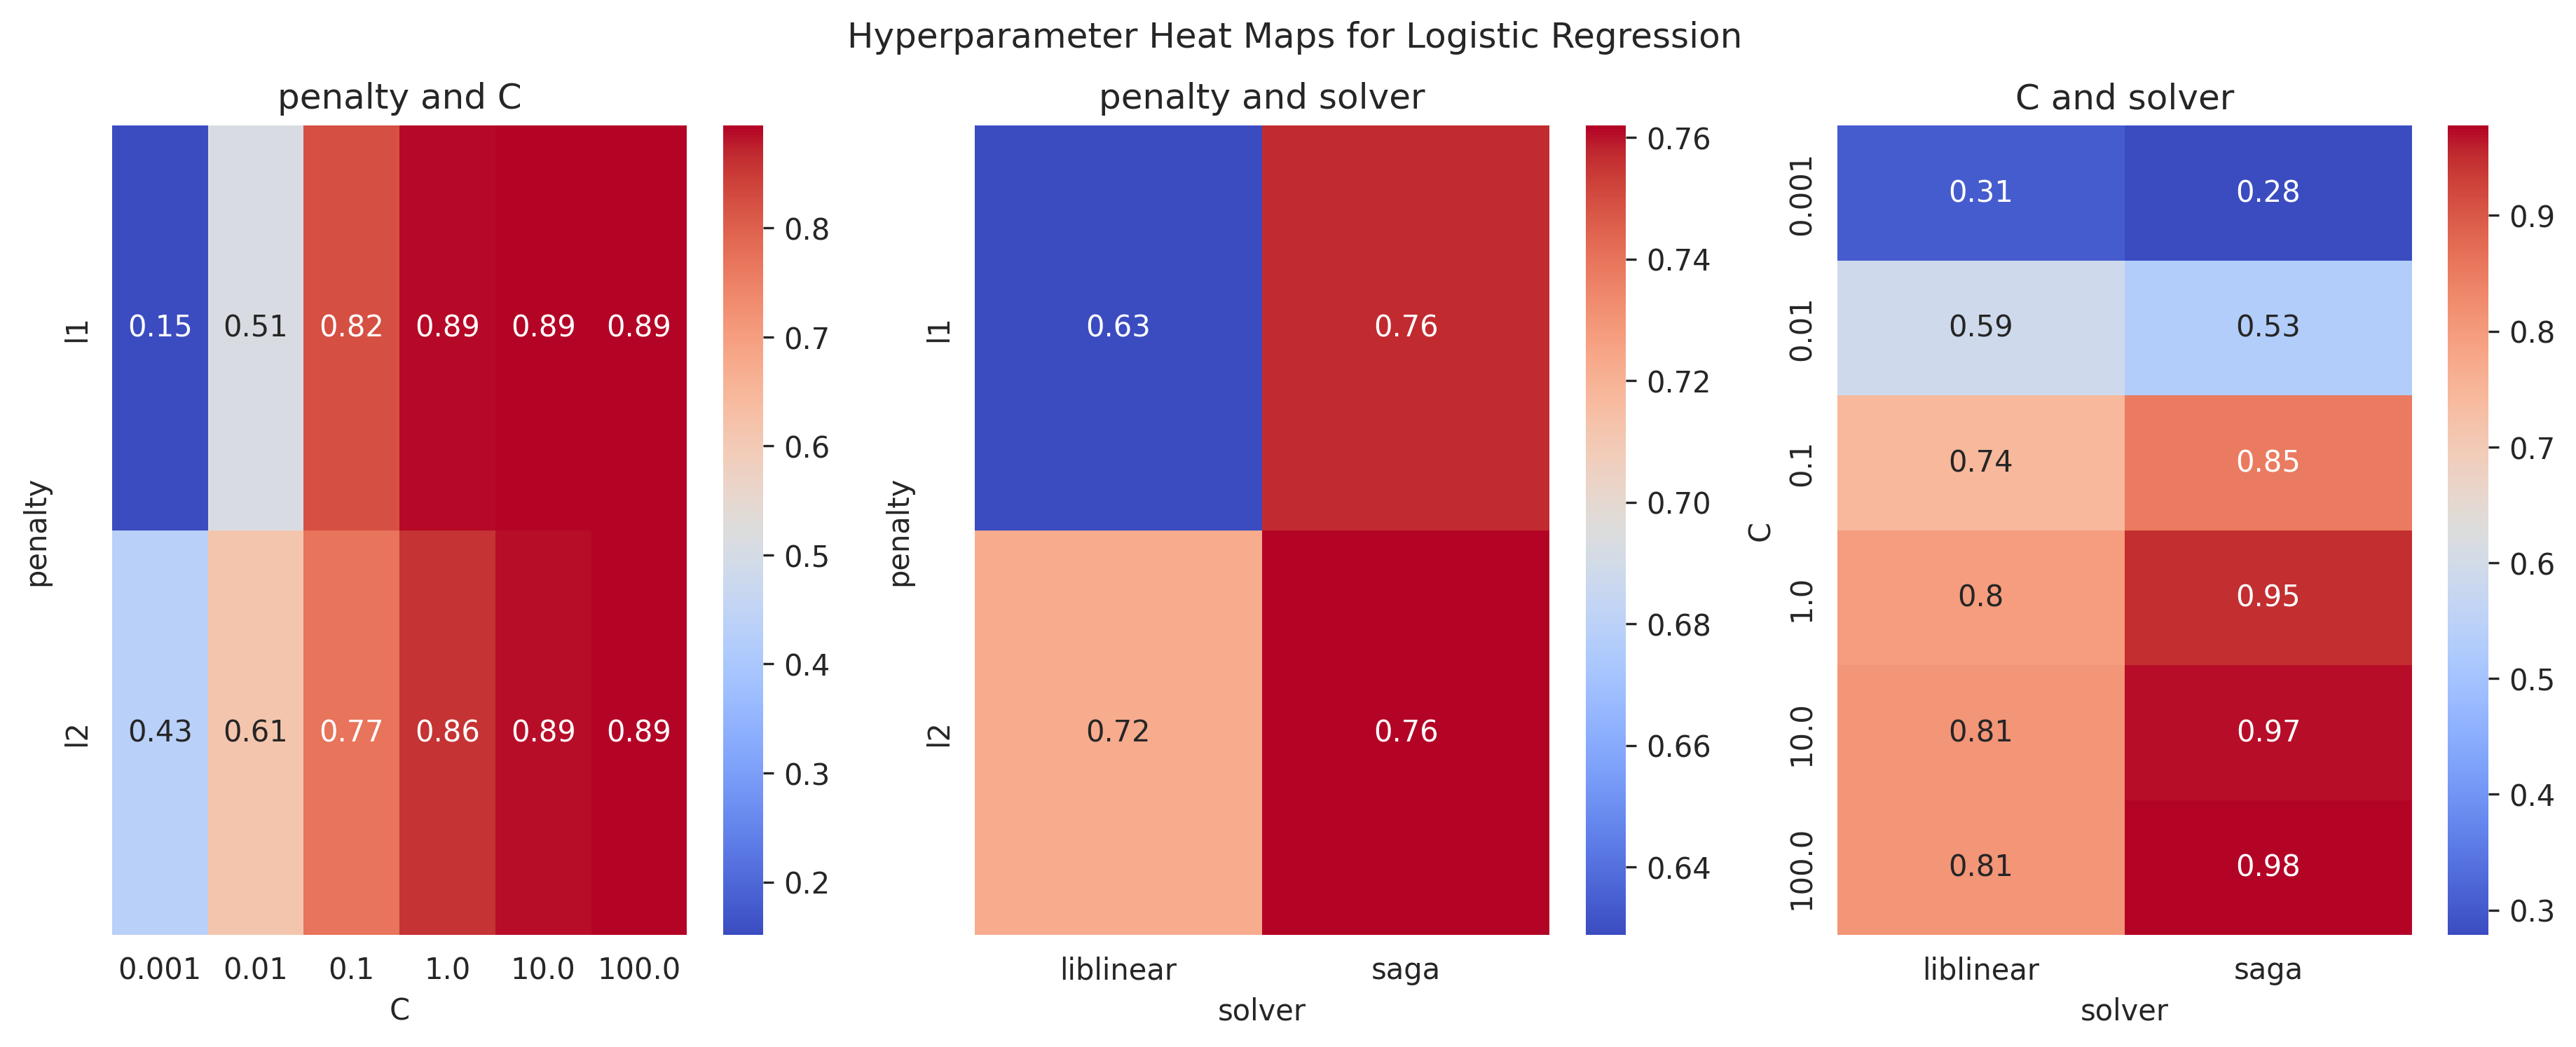 hyper_param_heat_maps